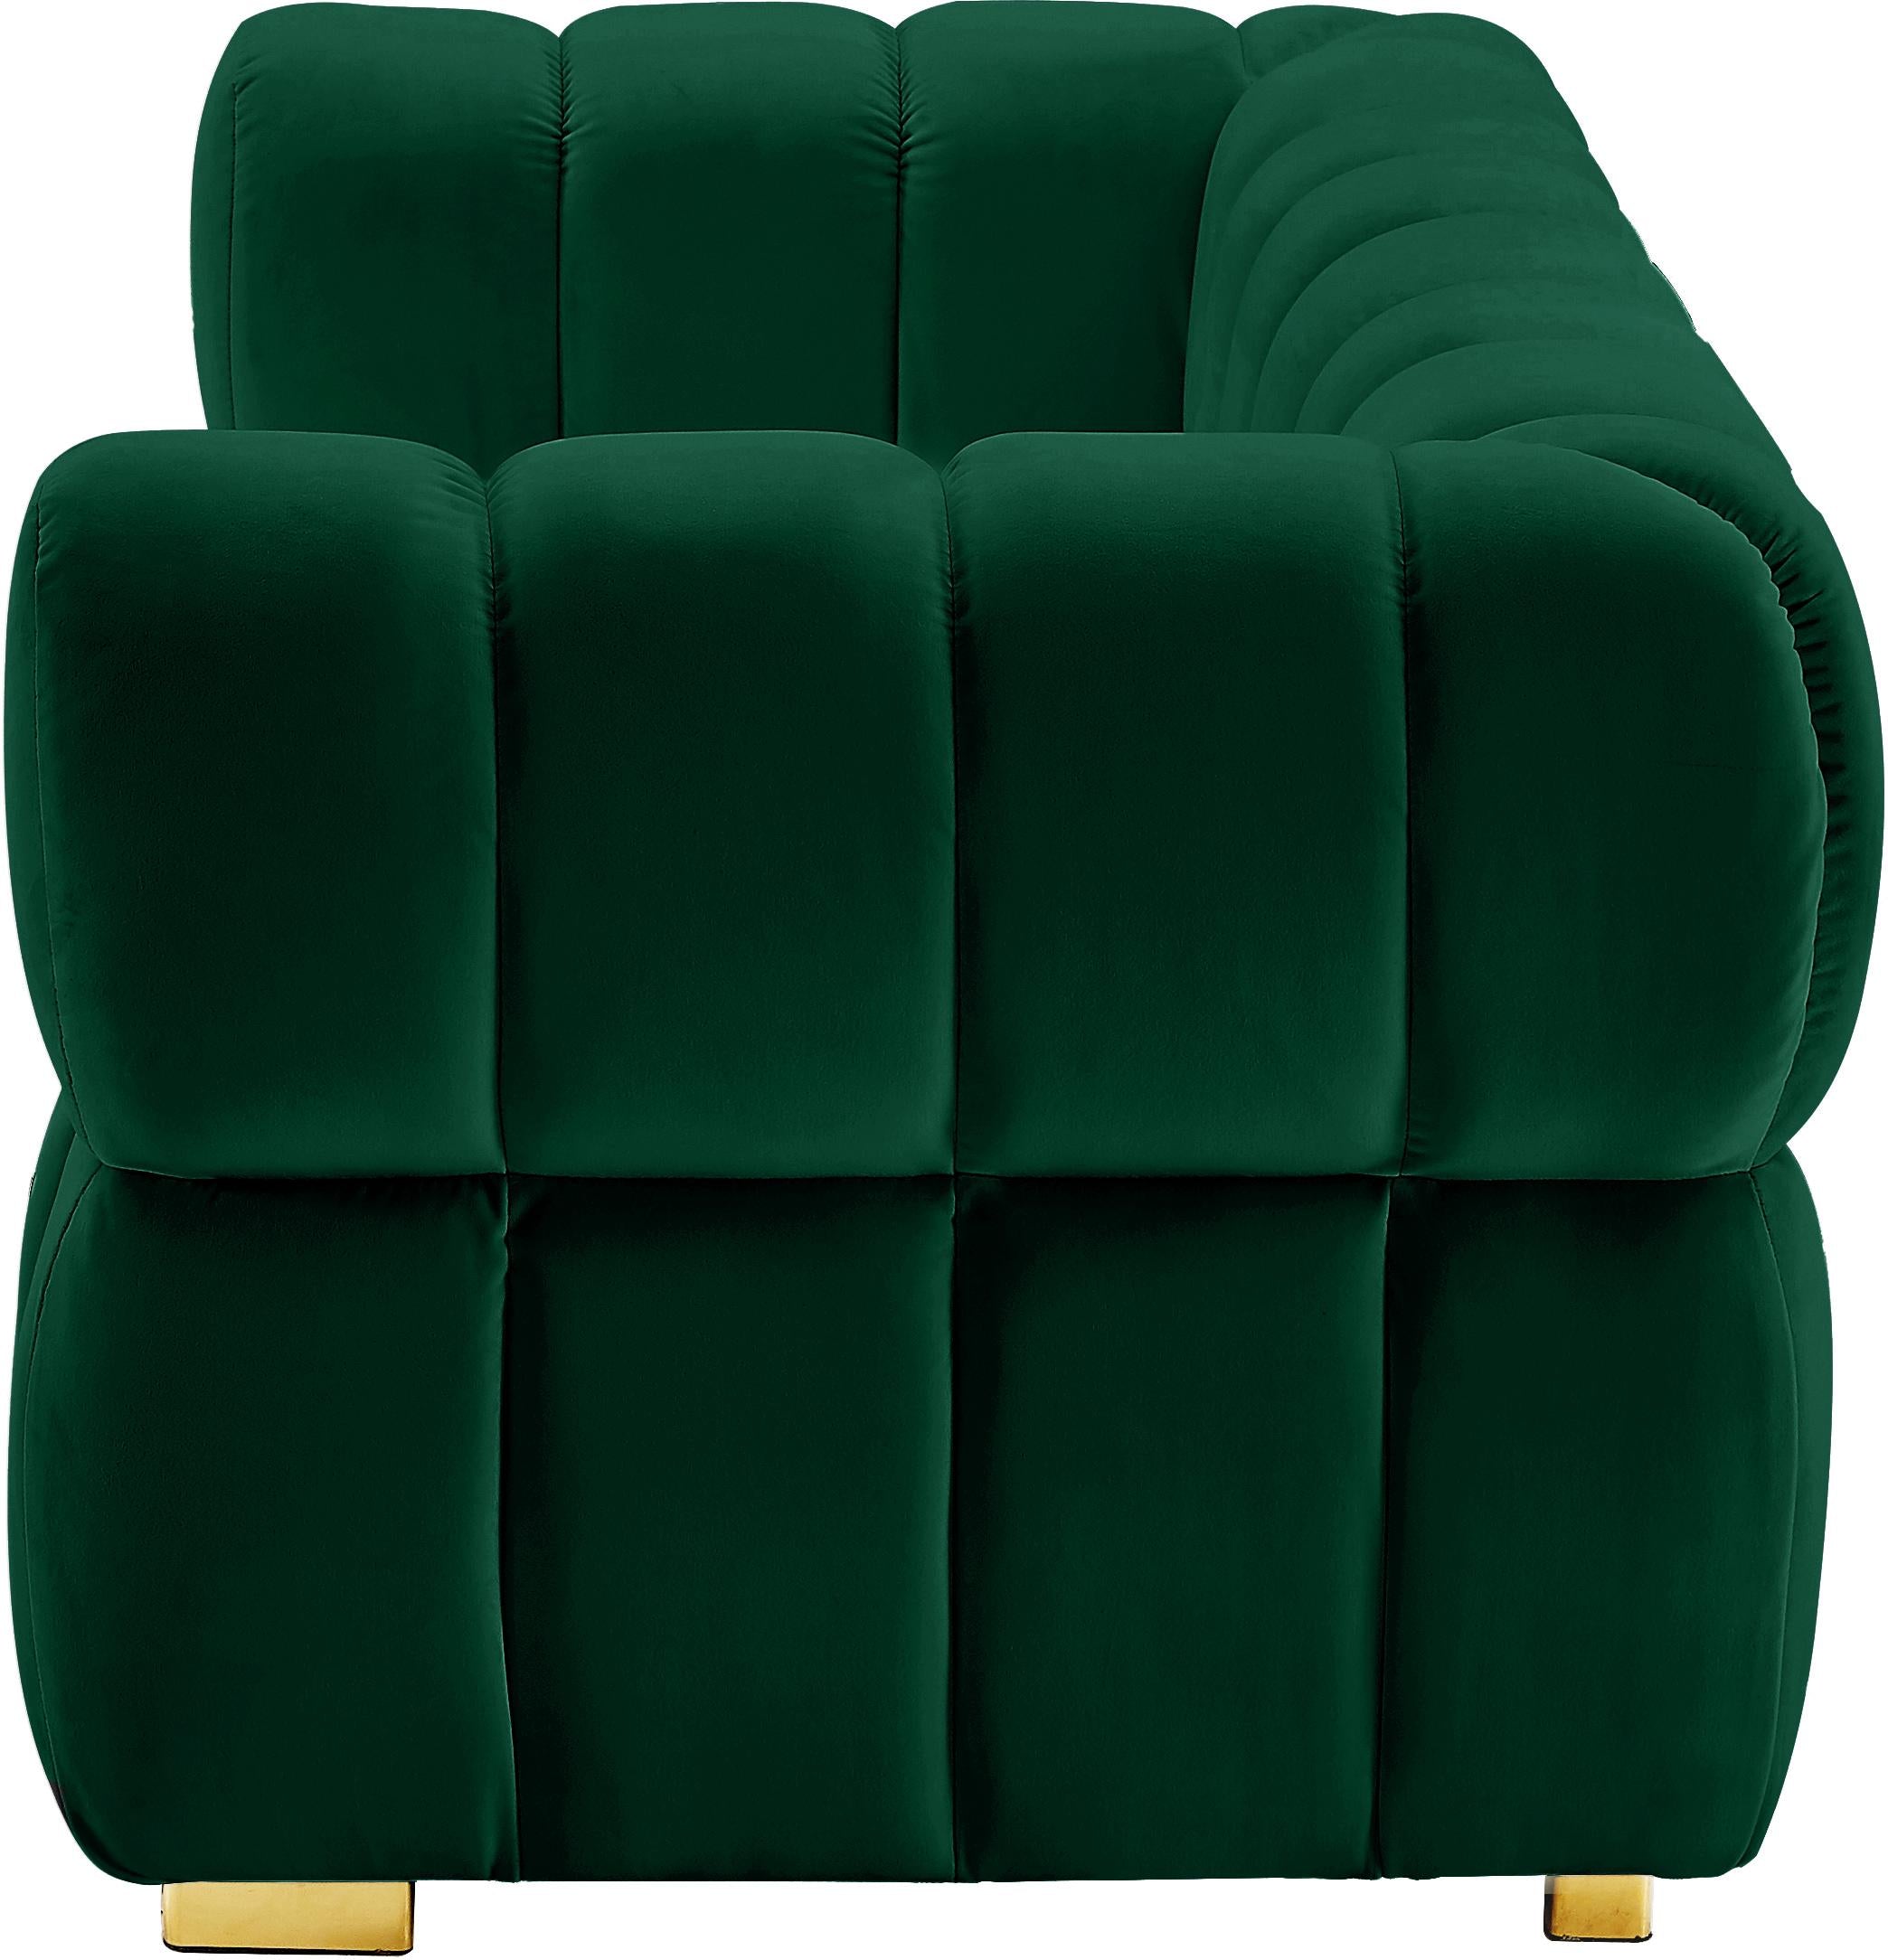 Gwen Green Velvet Loveseat - Luxury Home Furniture (MI)